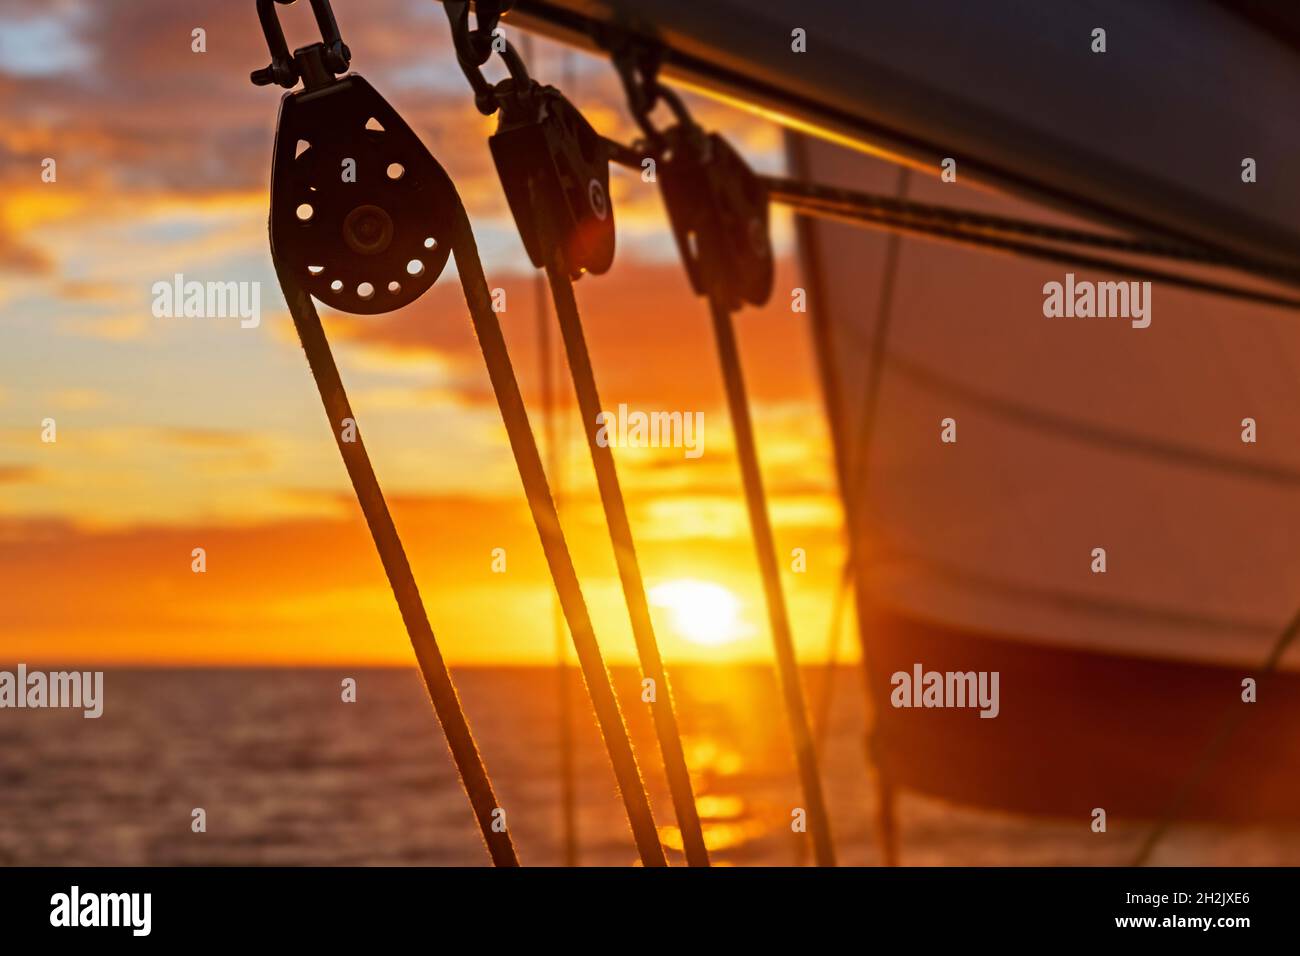 Primer plano de los bloques de barcos de vela / poleas de velero siluetas contra el cielo naranja de la puesta de sol sobre el Mar Caribe Foto de stock